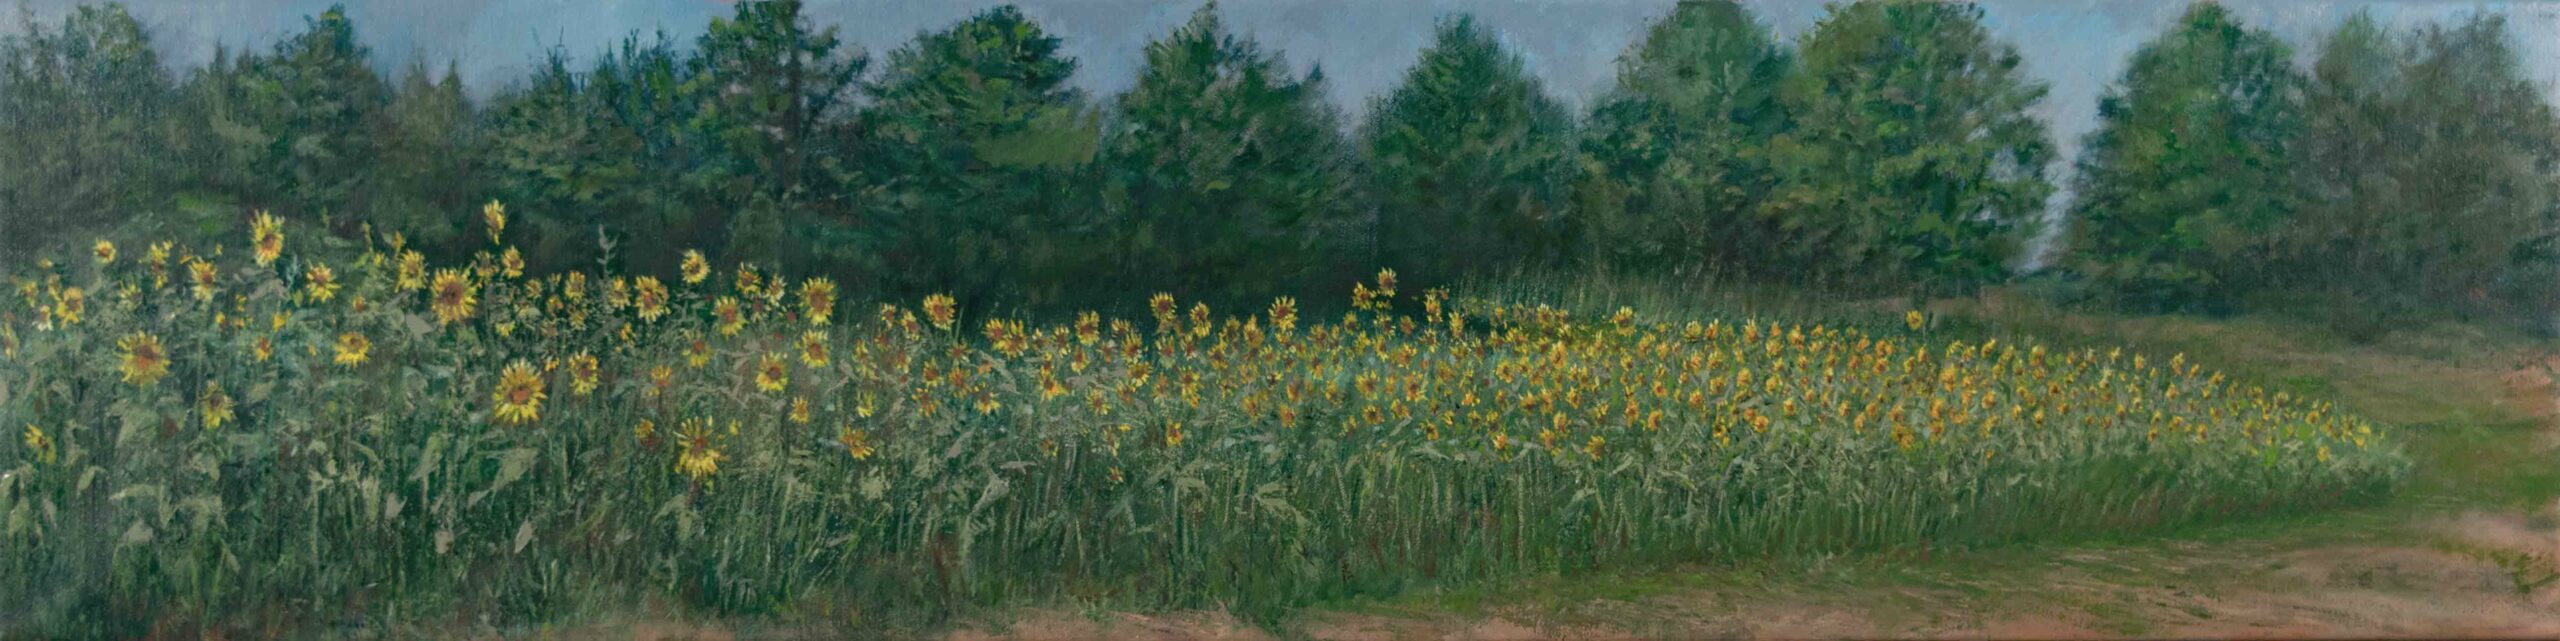 Ambler Farm Sunflower Fields painted en Plein air by artist Elizabeth Reed